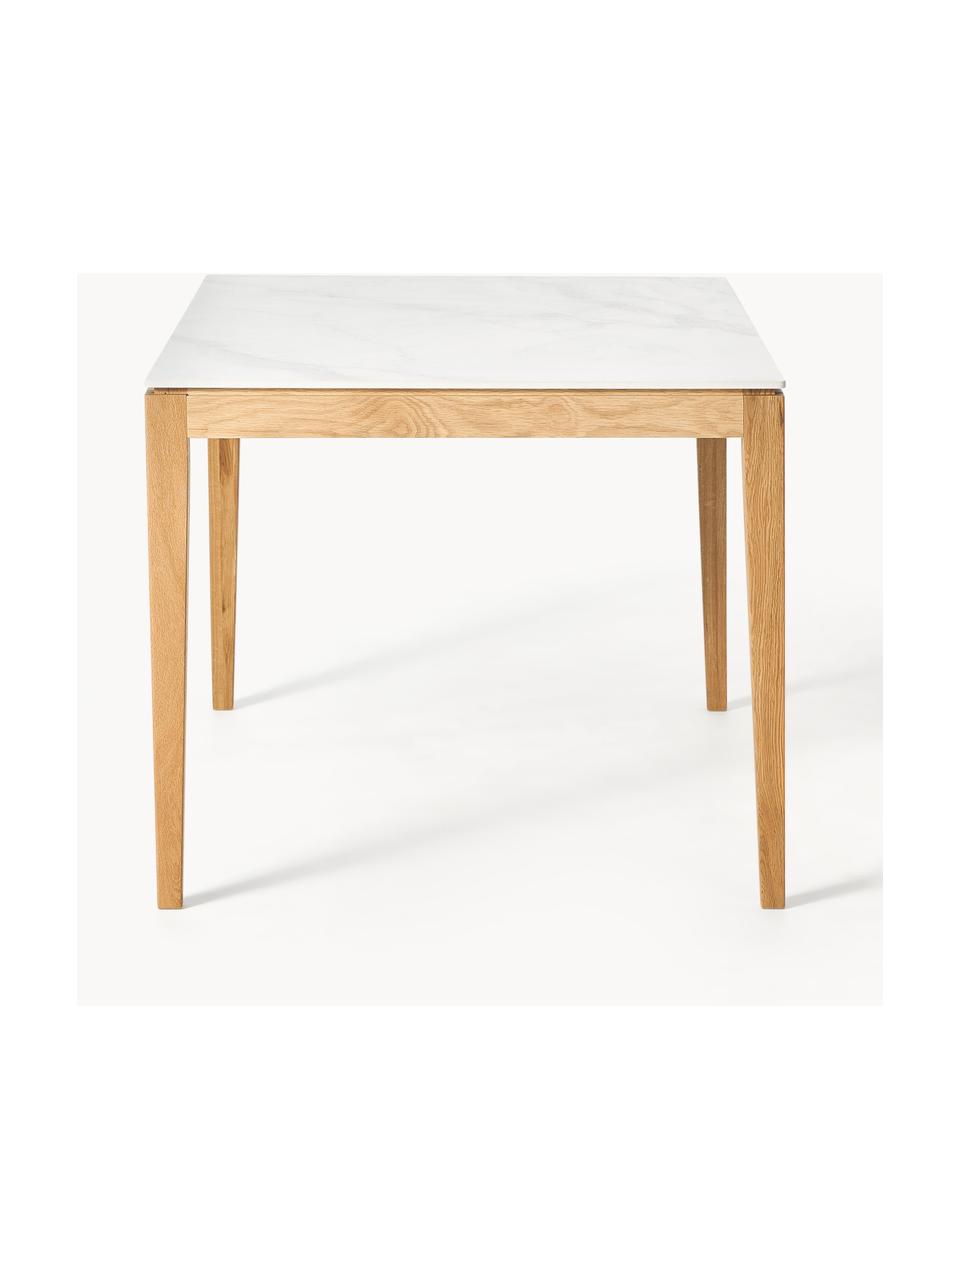 Jedálenský stôl s mramorovým vzhľadom Jackson, Mramorový vzhľad biela, dubové drevo lakované, Š 180 x H 90 cm